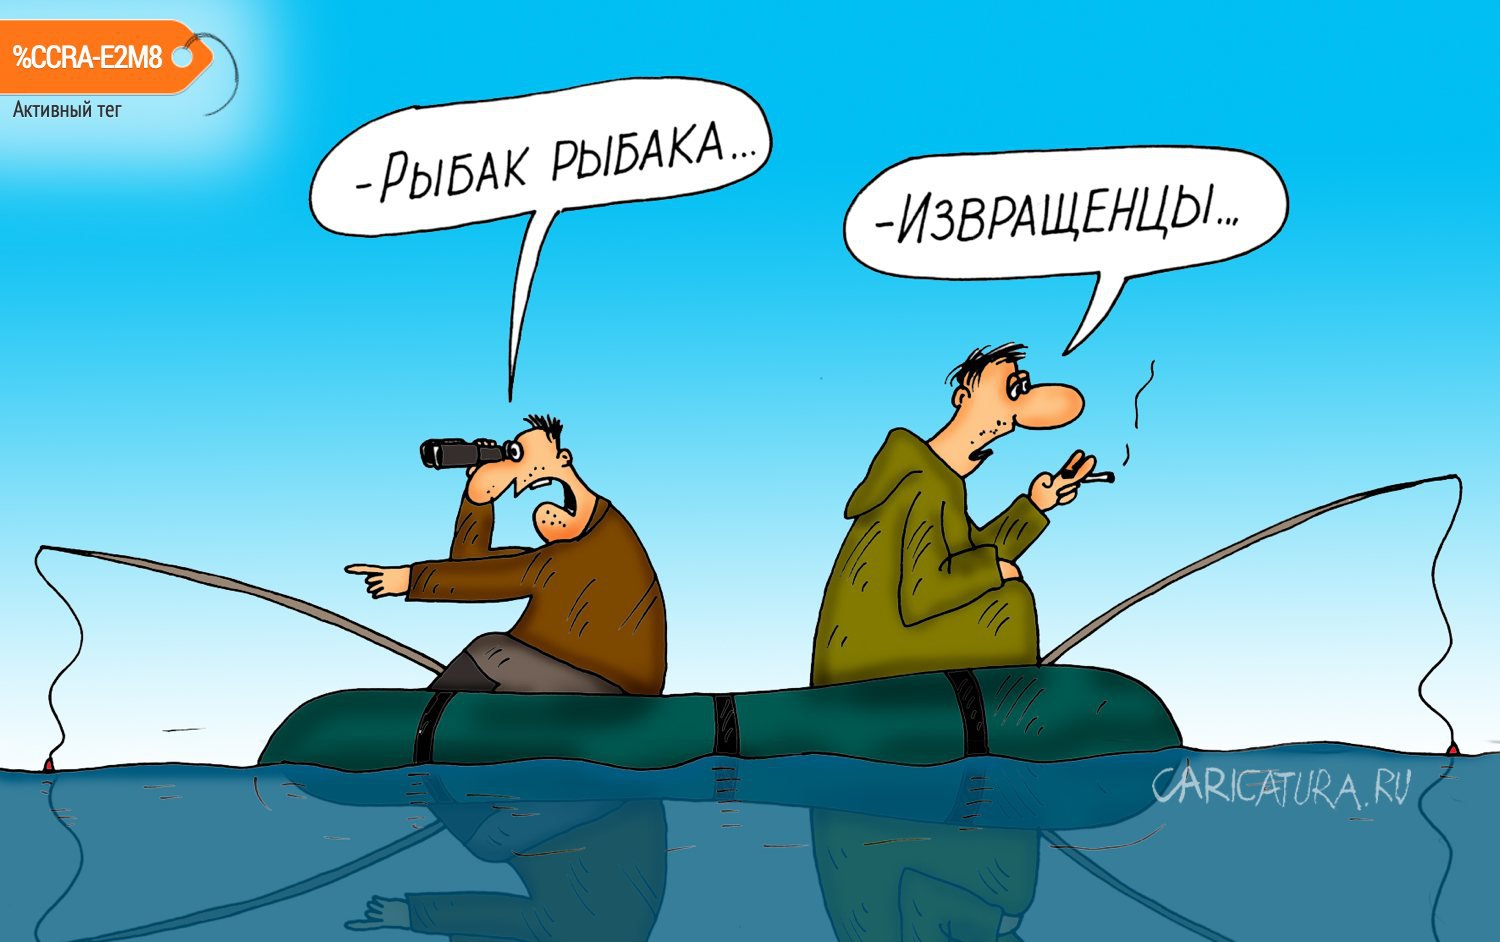 Карикатура "Рыбак рыбака", Алексей Булатов